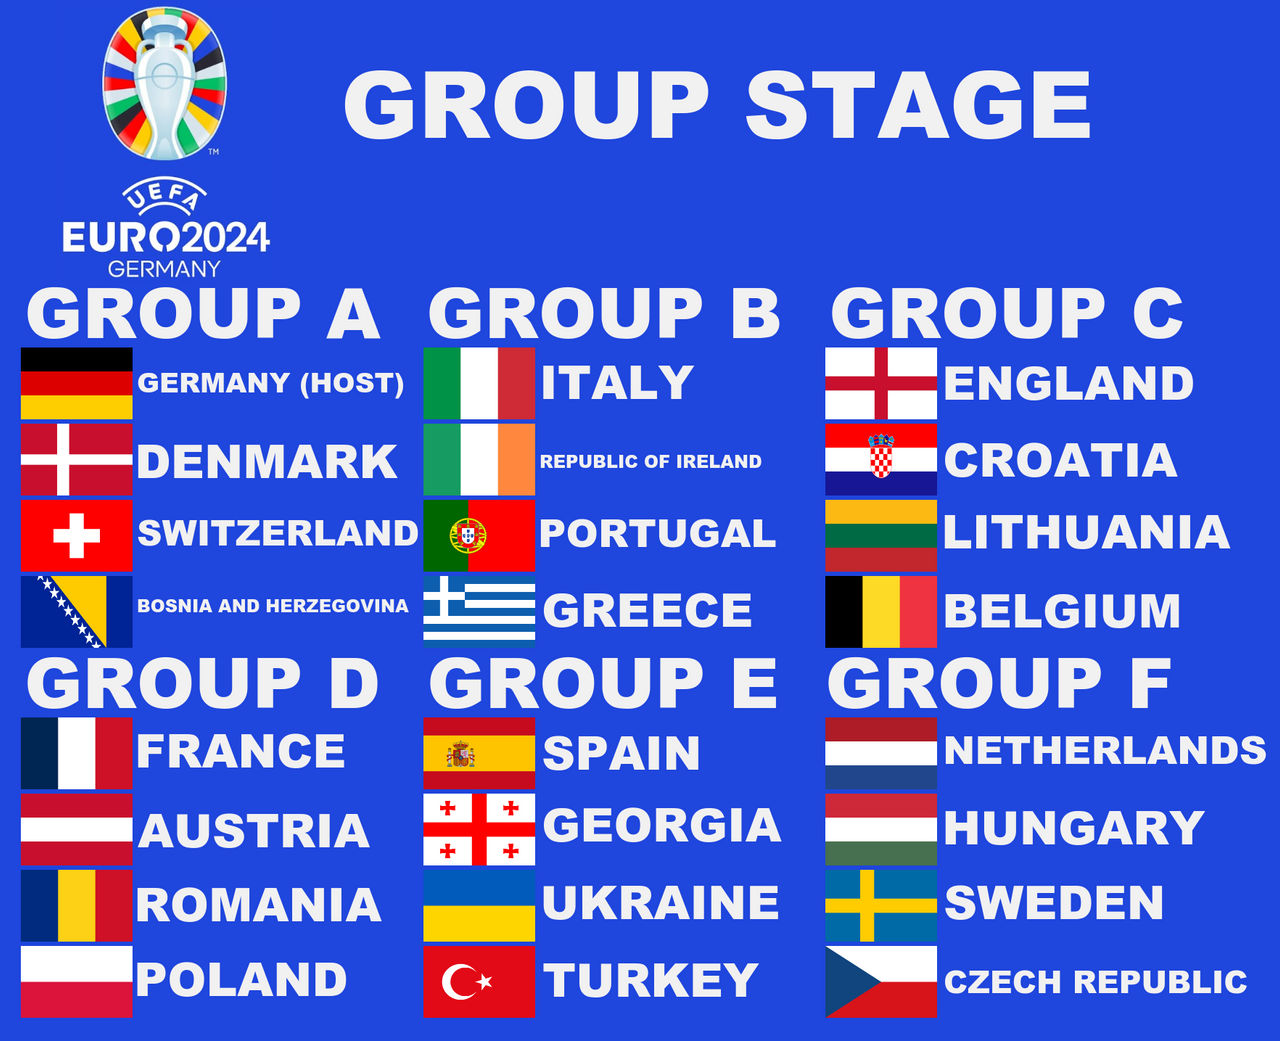 Uefa Euro 2024 Germany Possible Groups By Paintrubber38 Dfx5uau Fullview ?token=eyJ0eXAiOiJKV1QiLCJhbGciOiJIUzI1NiJ9.eyJzdWIiOiJ1cm46YXBwOjdlMGQxODg5ODIyNjQzNzNhNWYwZDQxNWVhMGQyNmUwIiwiaXNzIjoidXJuOmFwcDo3ZTBkMTg4OTgyMjY0MzczYTVmMGQ0MTVlYTBkMjZlMCIsIm9iaiI6W1t7ImhlaWdodCI6Ijw9MTA0MSIsInBhdGgiOiJcL2ZcLzBhMzc3NWU5LWE4N2MtNDFiMS1hMTllLWVkZGVhOGU1NTc4N1wvZGZ4NXVhdS04YTYwNDc4Yi00ZWI3LTQ2ZjQtYmQyOC0yZjRmNTlkYWMzMmEucG5nIiwid2lkdGgiOiI8PTEyODAifV1dLCJhdWQiOlsidXJuOnNlcnZpY2U6aW1hZ2Uub3BlcmF0aW9ucyJdfQ.nkhQuEh1ay 06YJxZNbwJUFgugLpmV3EtWkWkkXyc2c